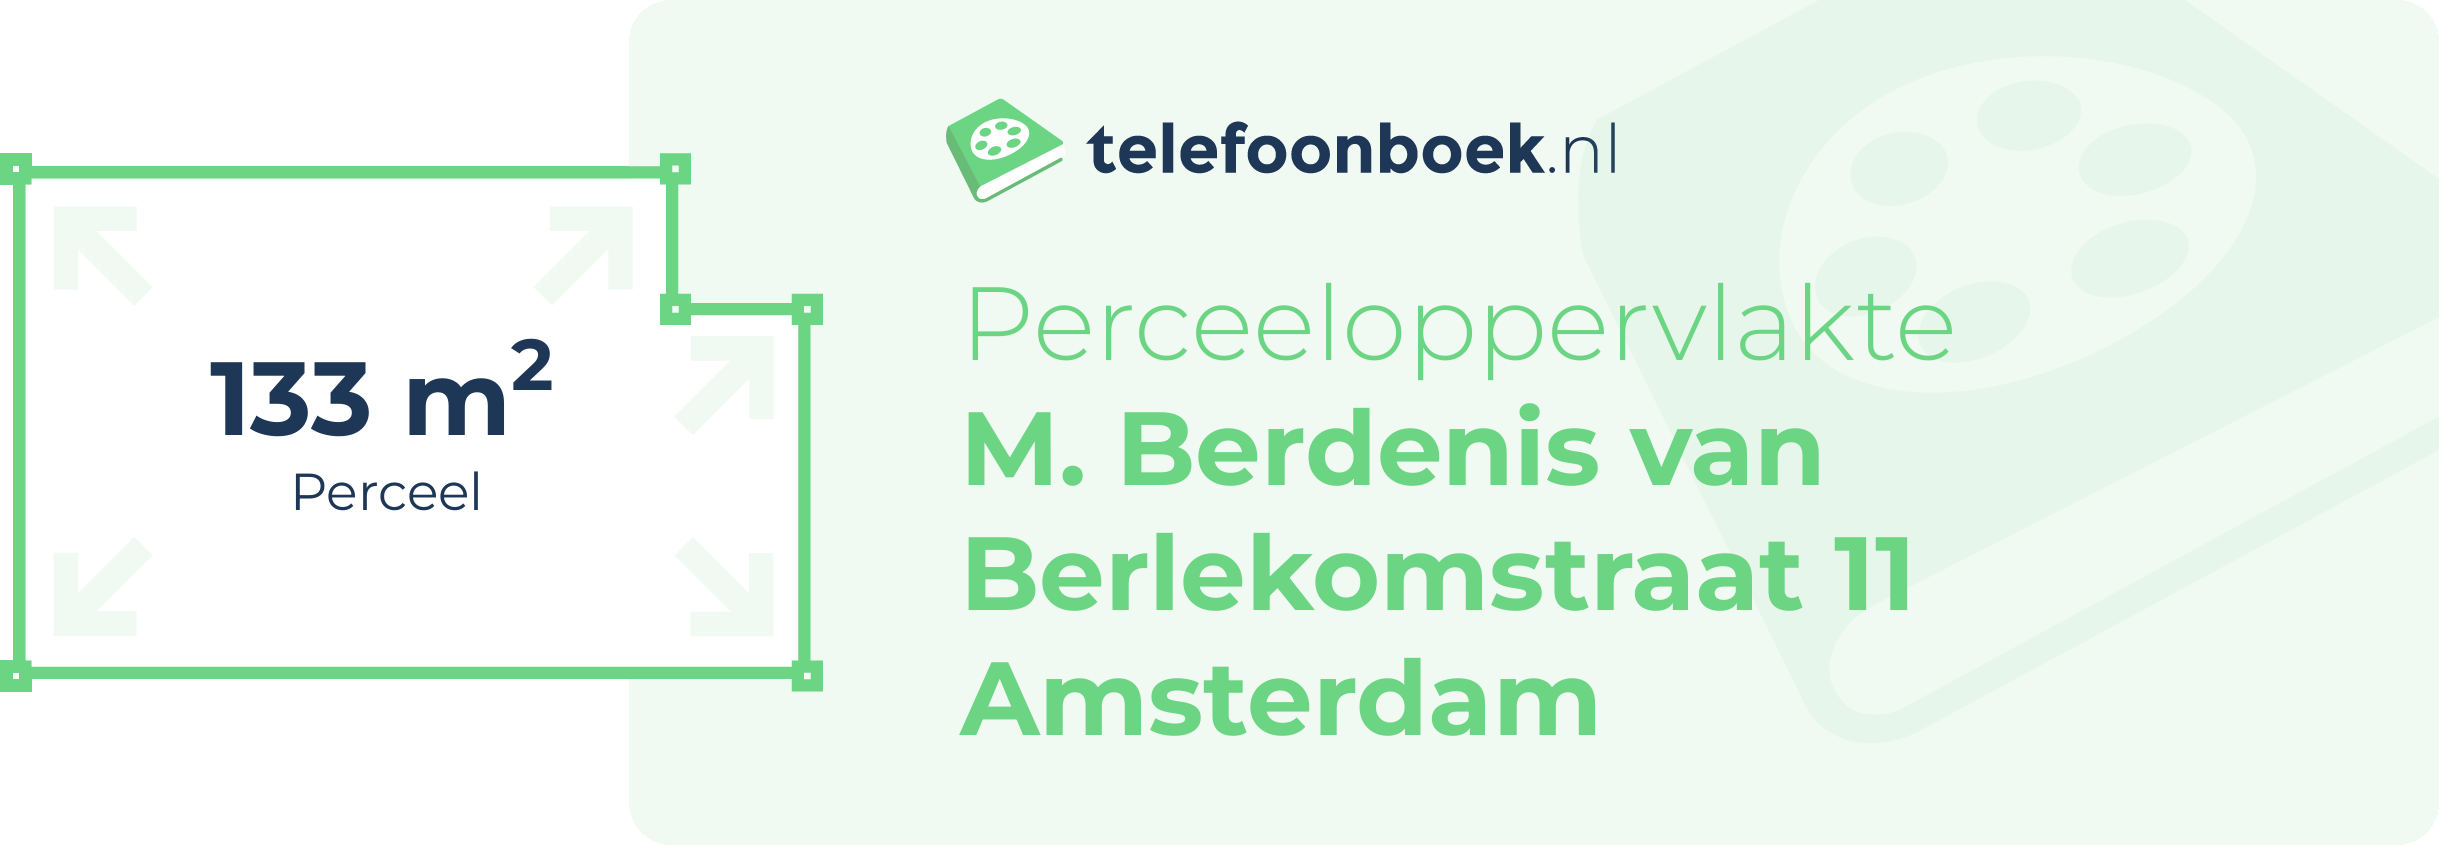 Perceeloppervlakte M. Berdenis Van Berlekomstraat 11 Amsterdam